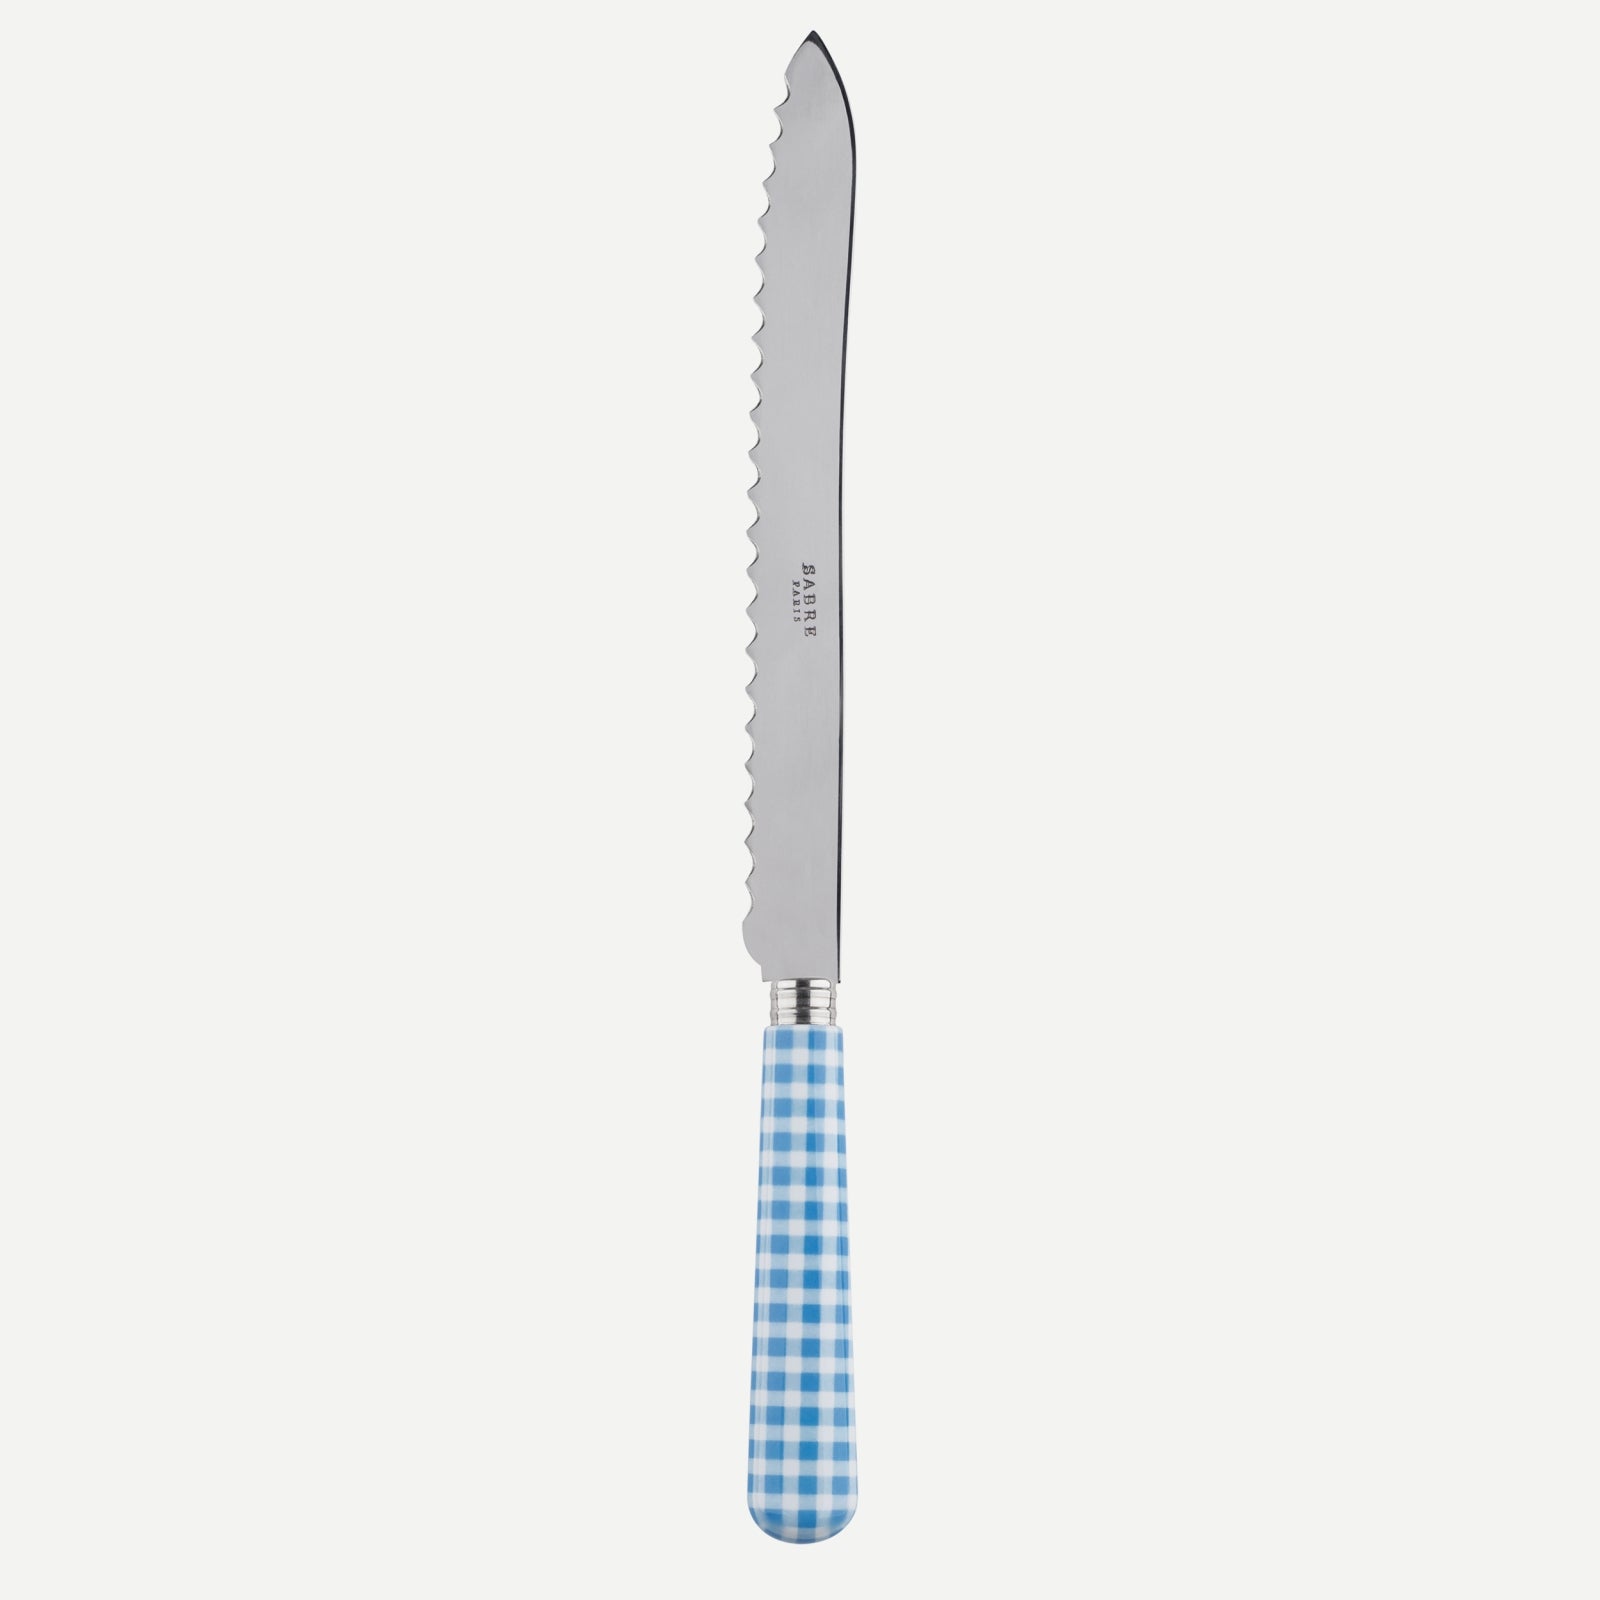 Bread knife - Gingham - Light blue